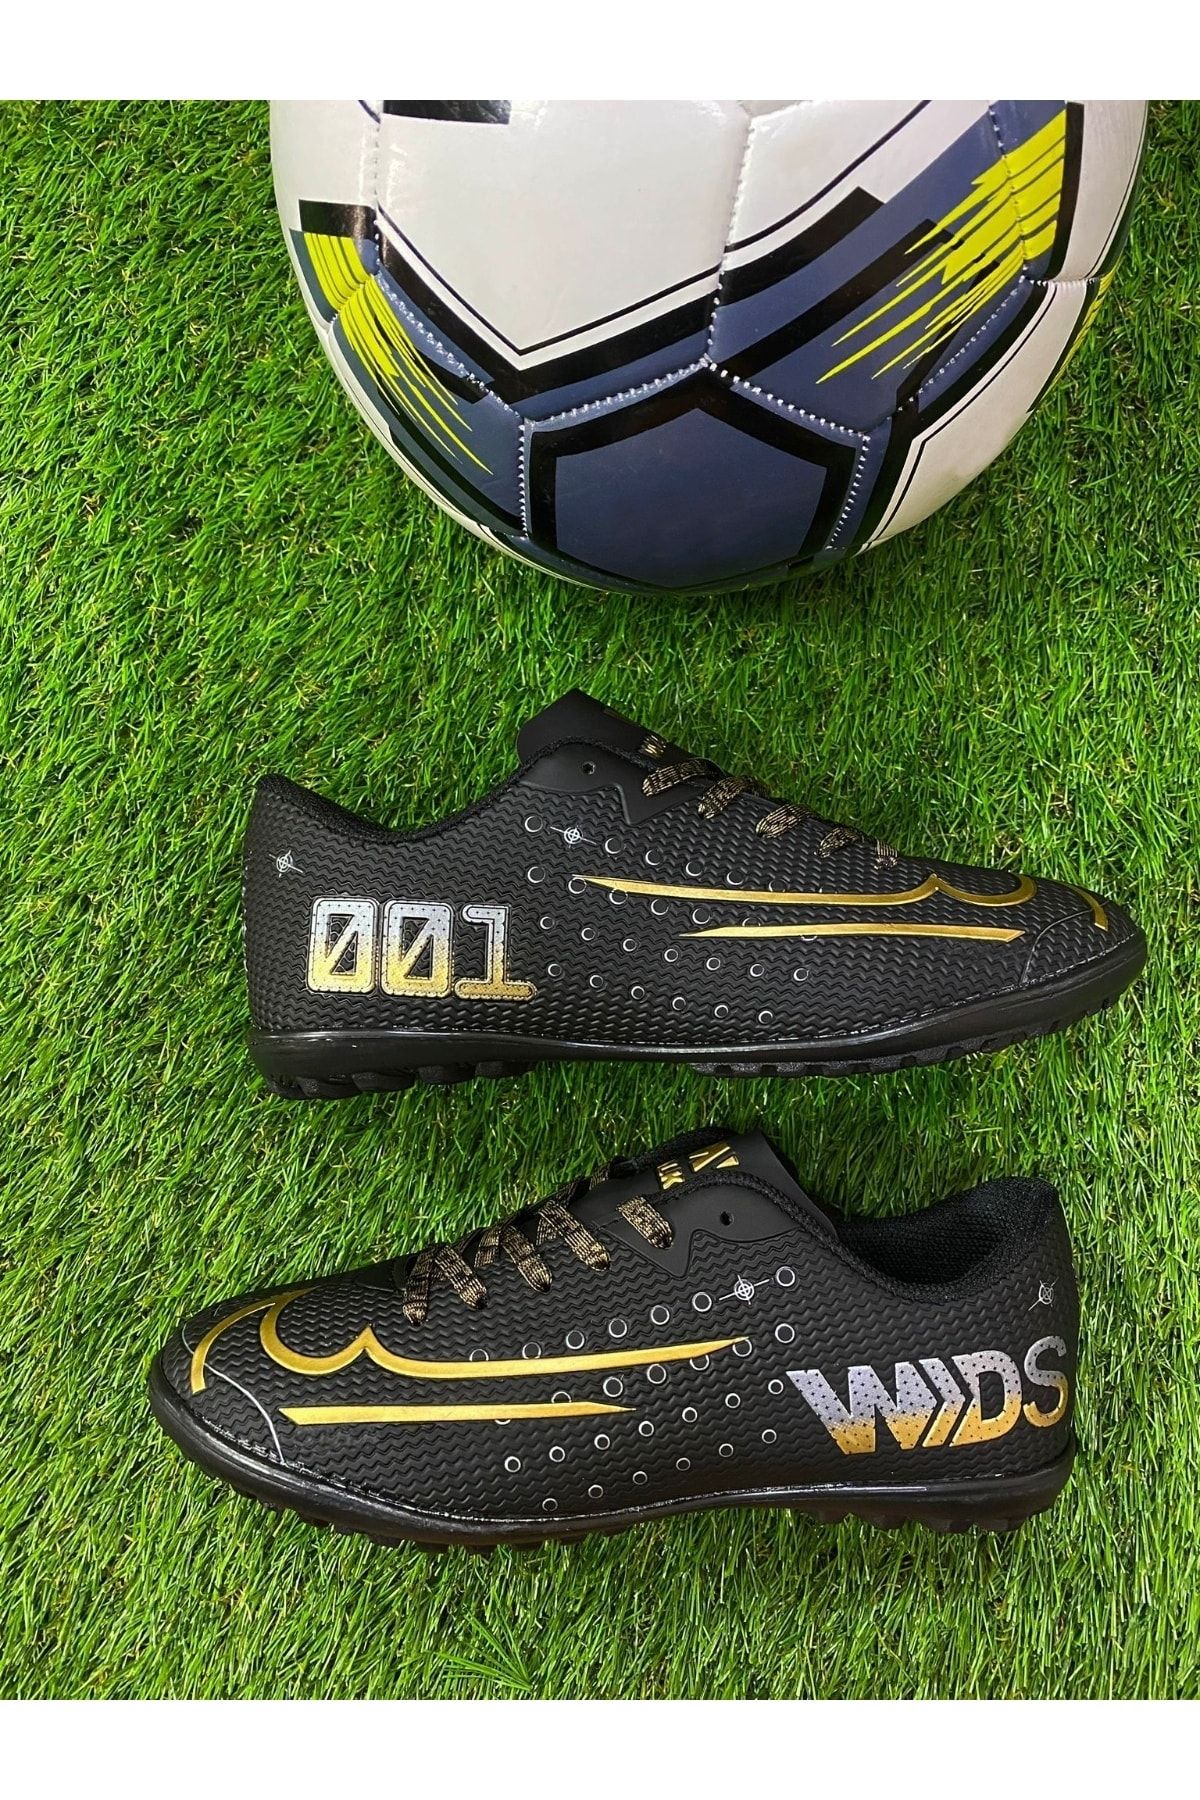 Walked Yusufshoes Çivisiz Mds001 Siyah Altın Halı Saha Futbol Ayakkabısı